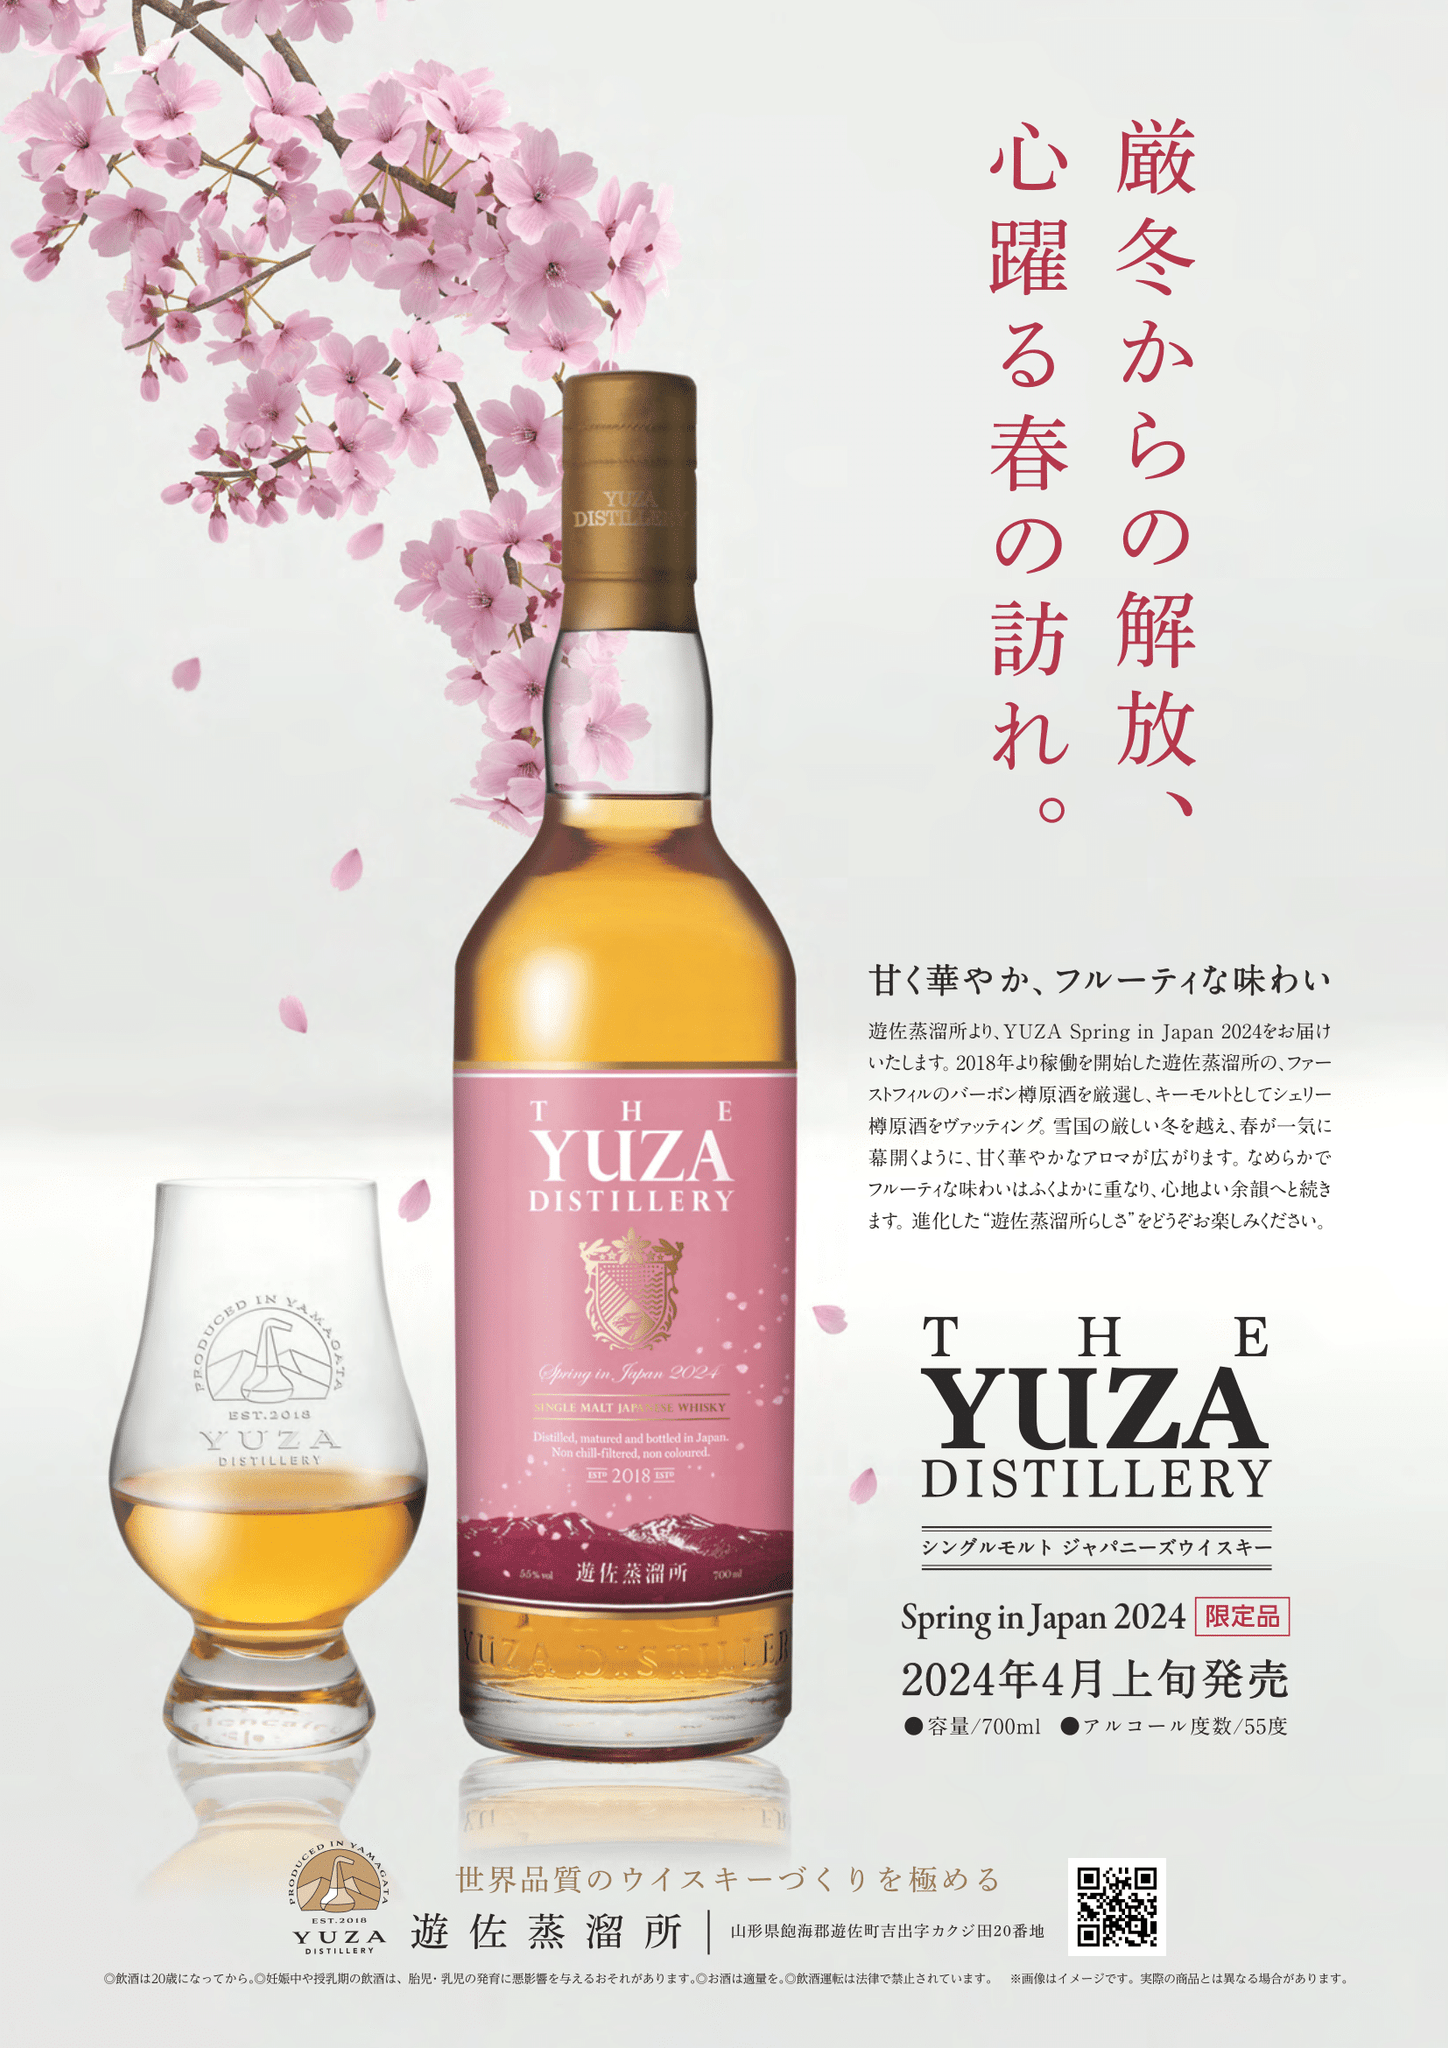 YUZA Spring in Japan 2024 ハイランドパーク12年セット アウトレット ...